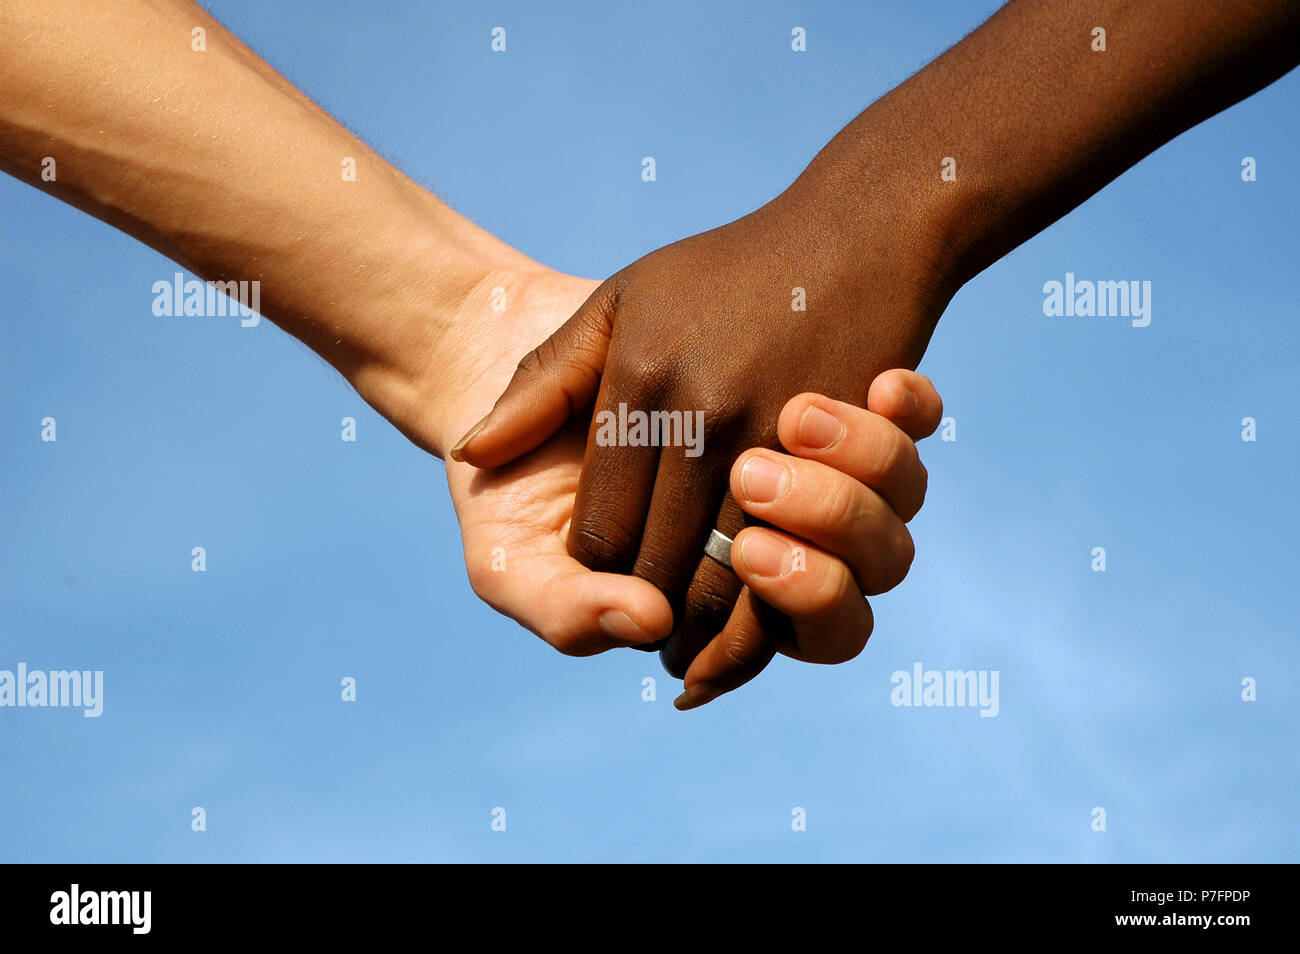 La peau sombre et à peau claire, main, tenir la main, main dans la main, de l'Amitié Banque D'Images